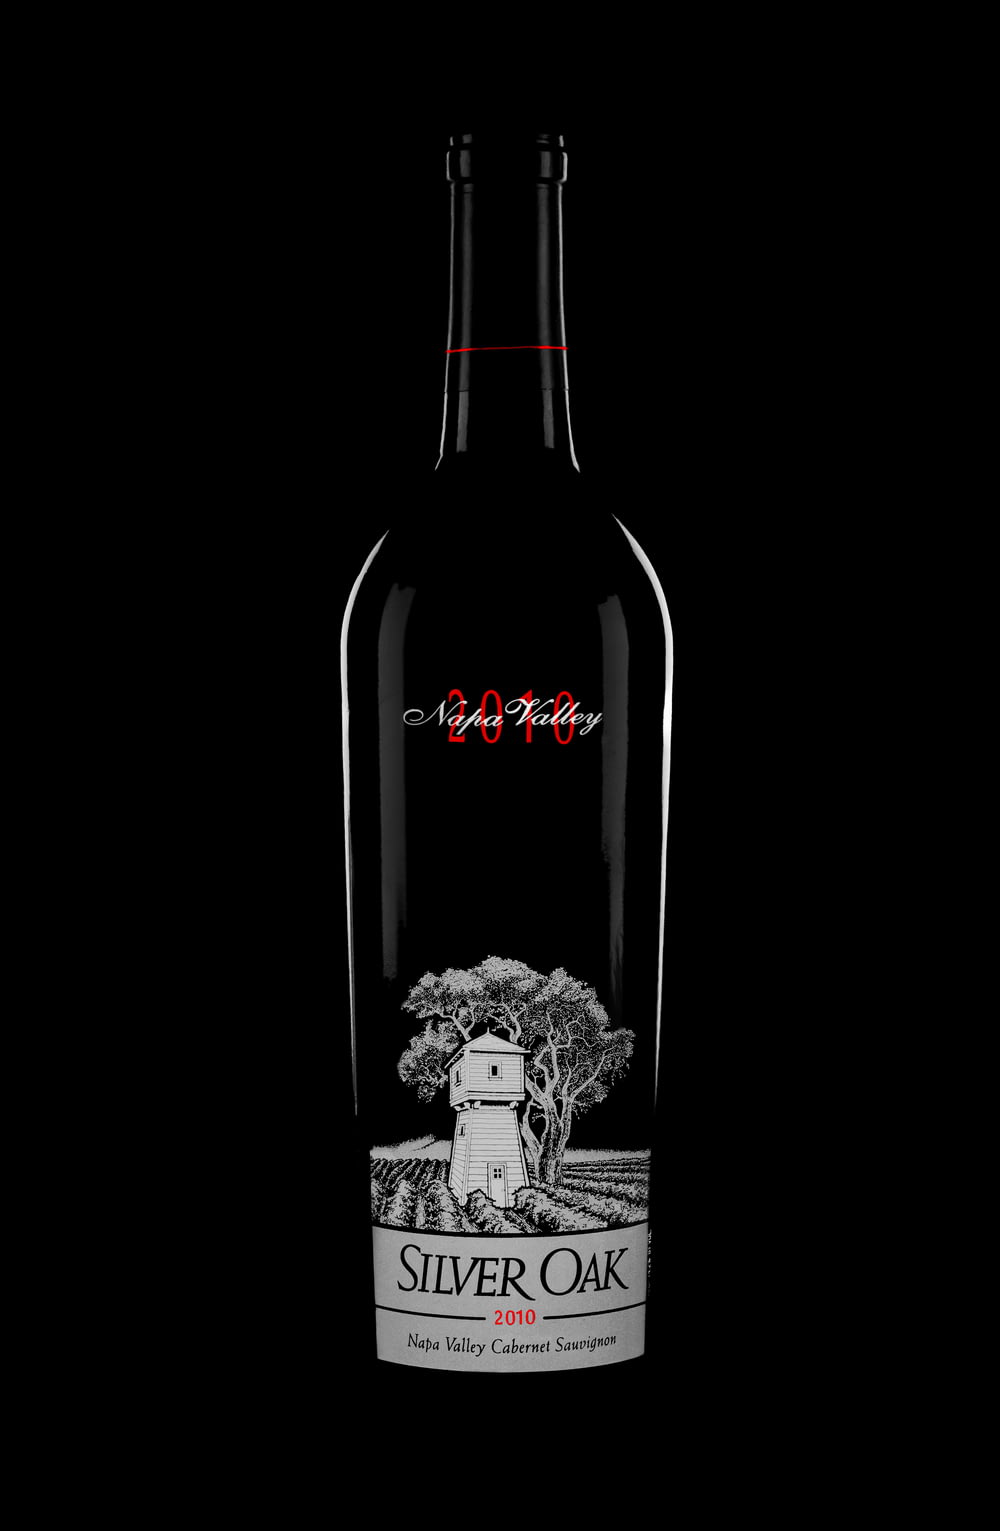 a bottle of silver oak wine on a black background